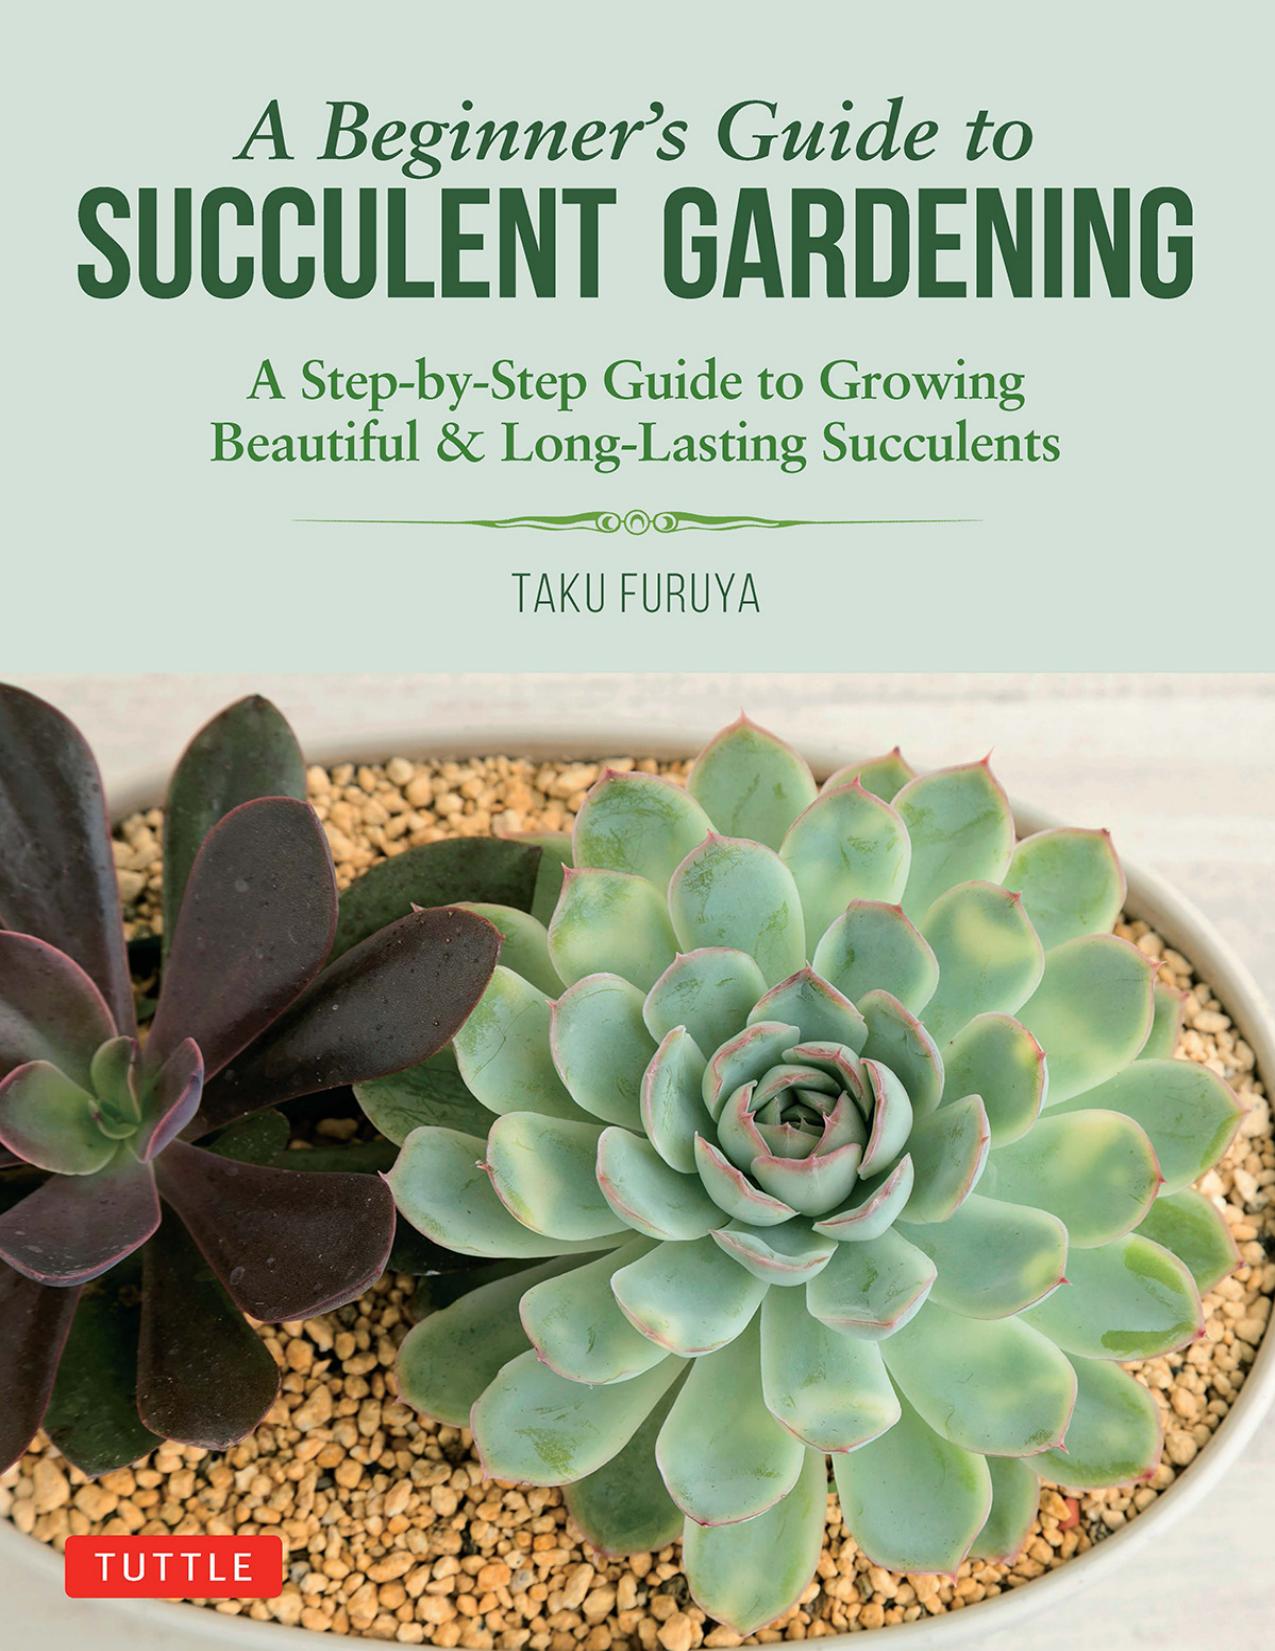 A Beginner's Guide to Succulent Gardening by Taku Furuya